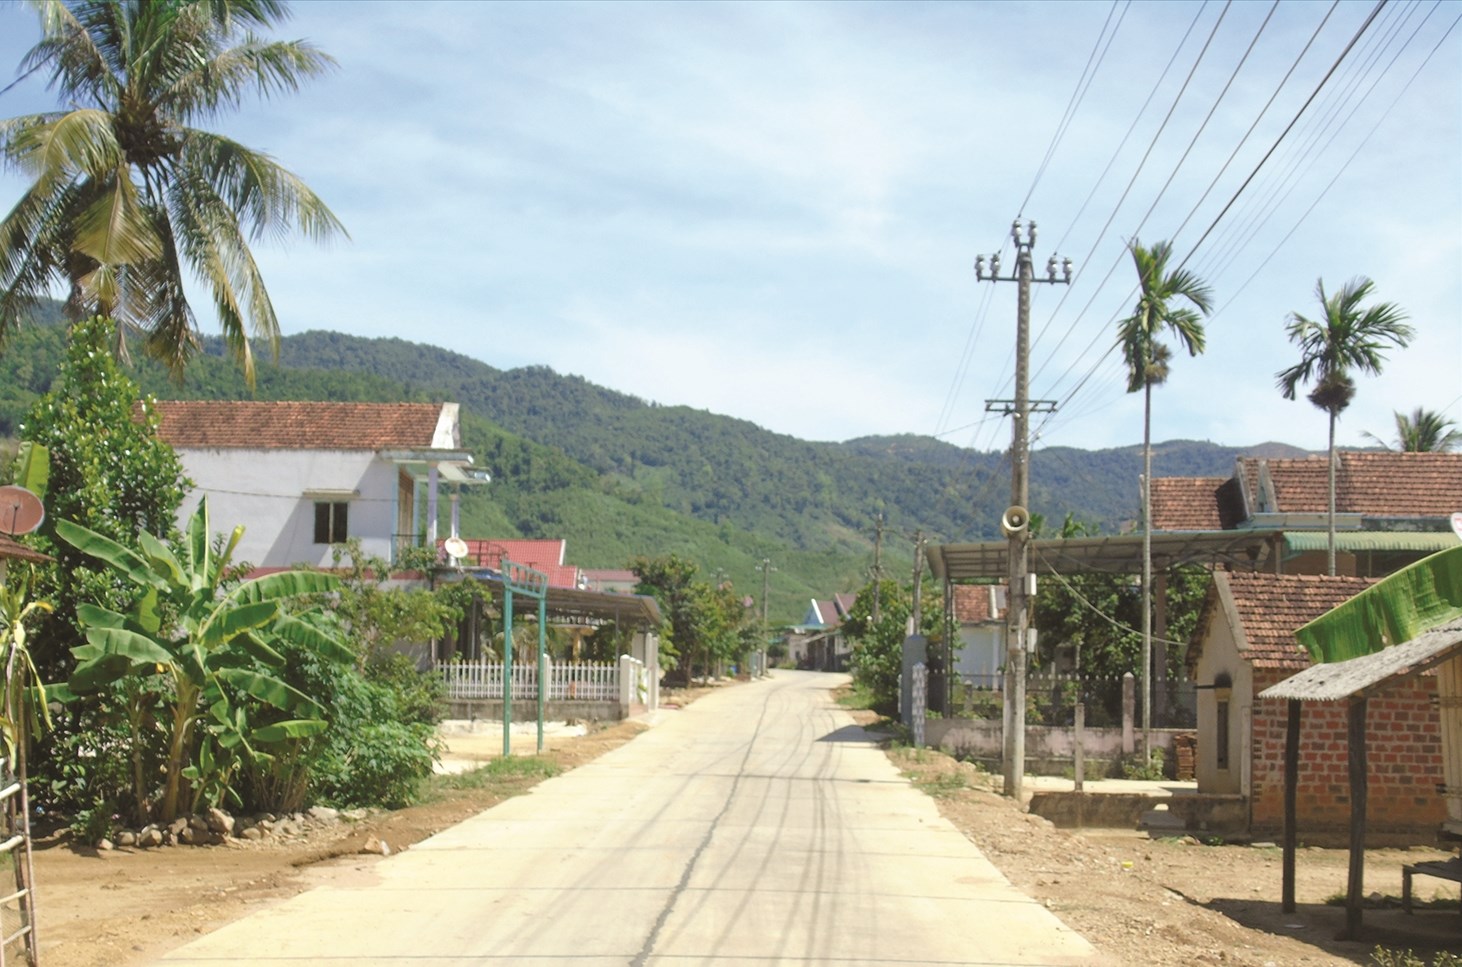 Đường giao thông ở các khu dân cư được huyện Hoài Ân đầu tư hoàn chỉnh.